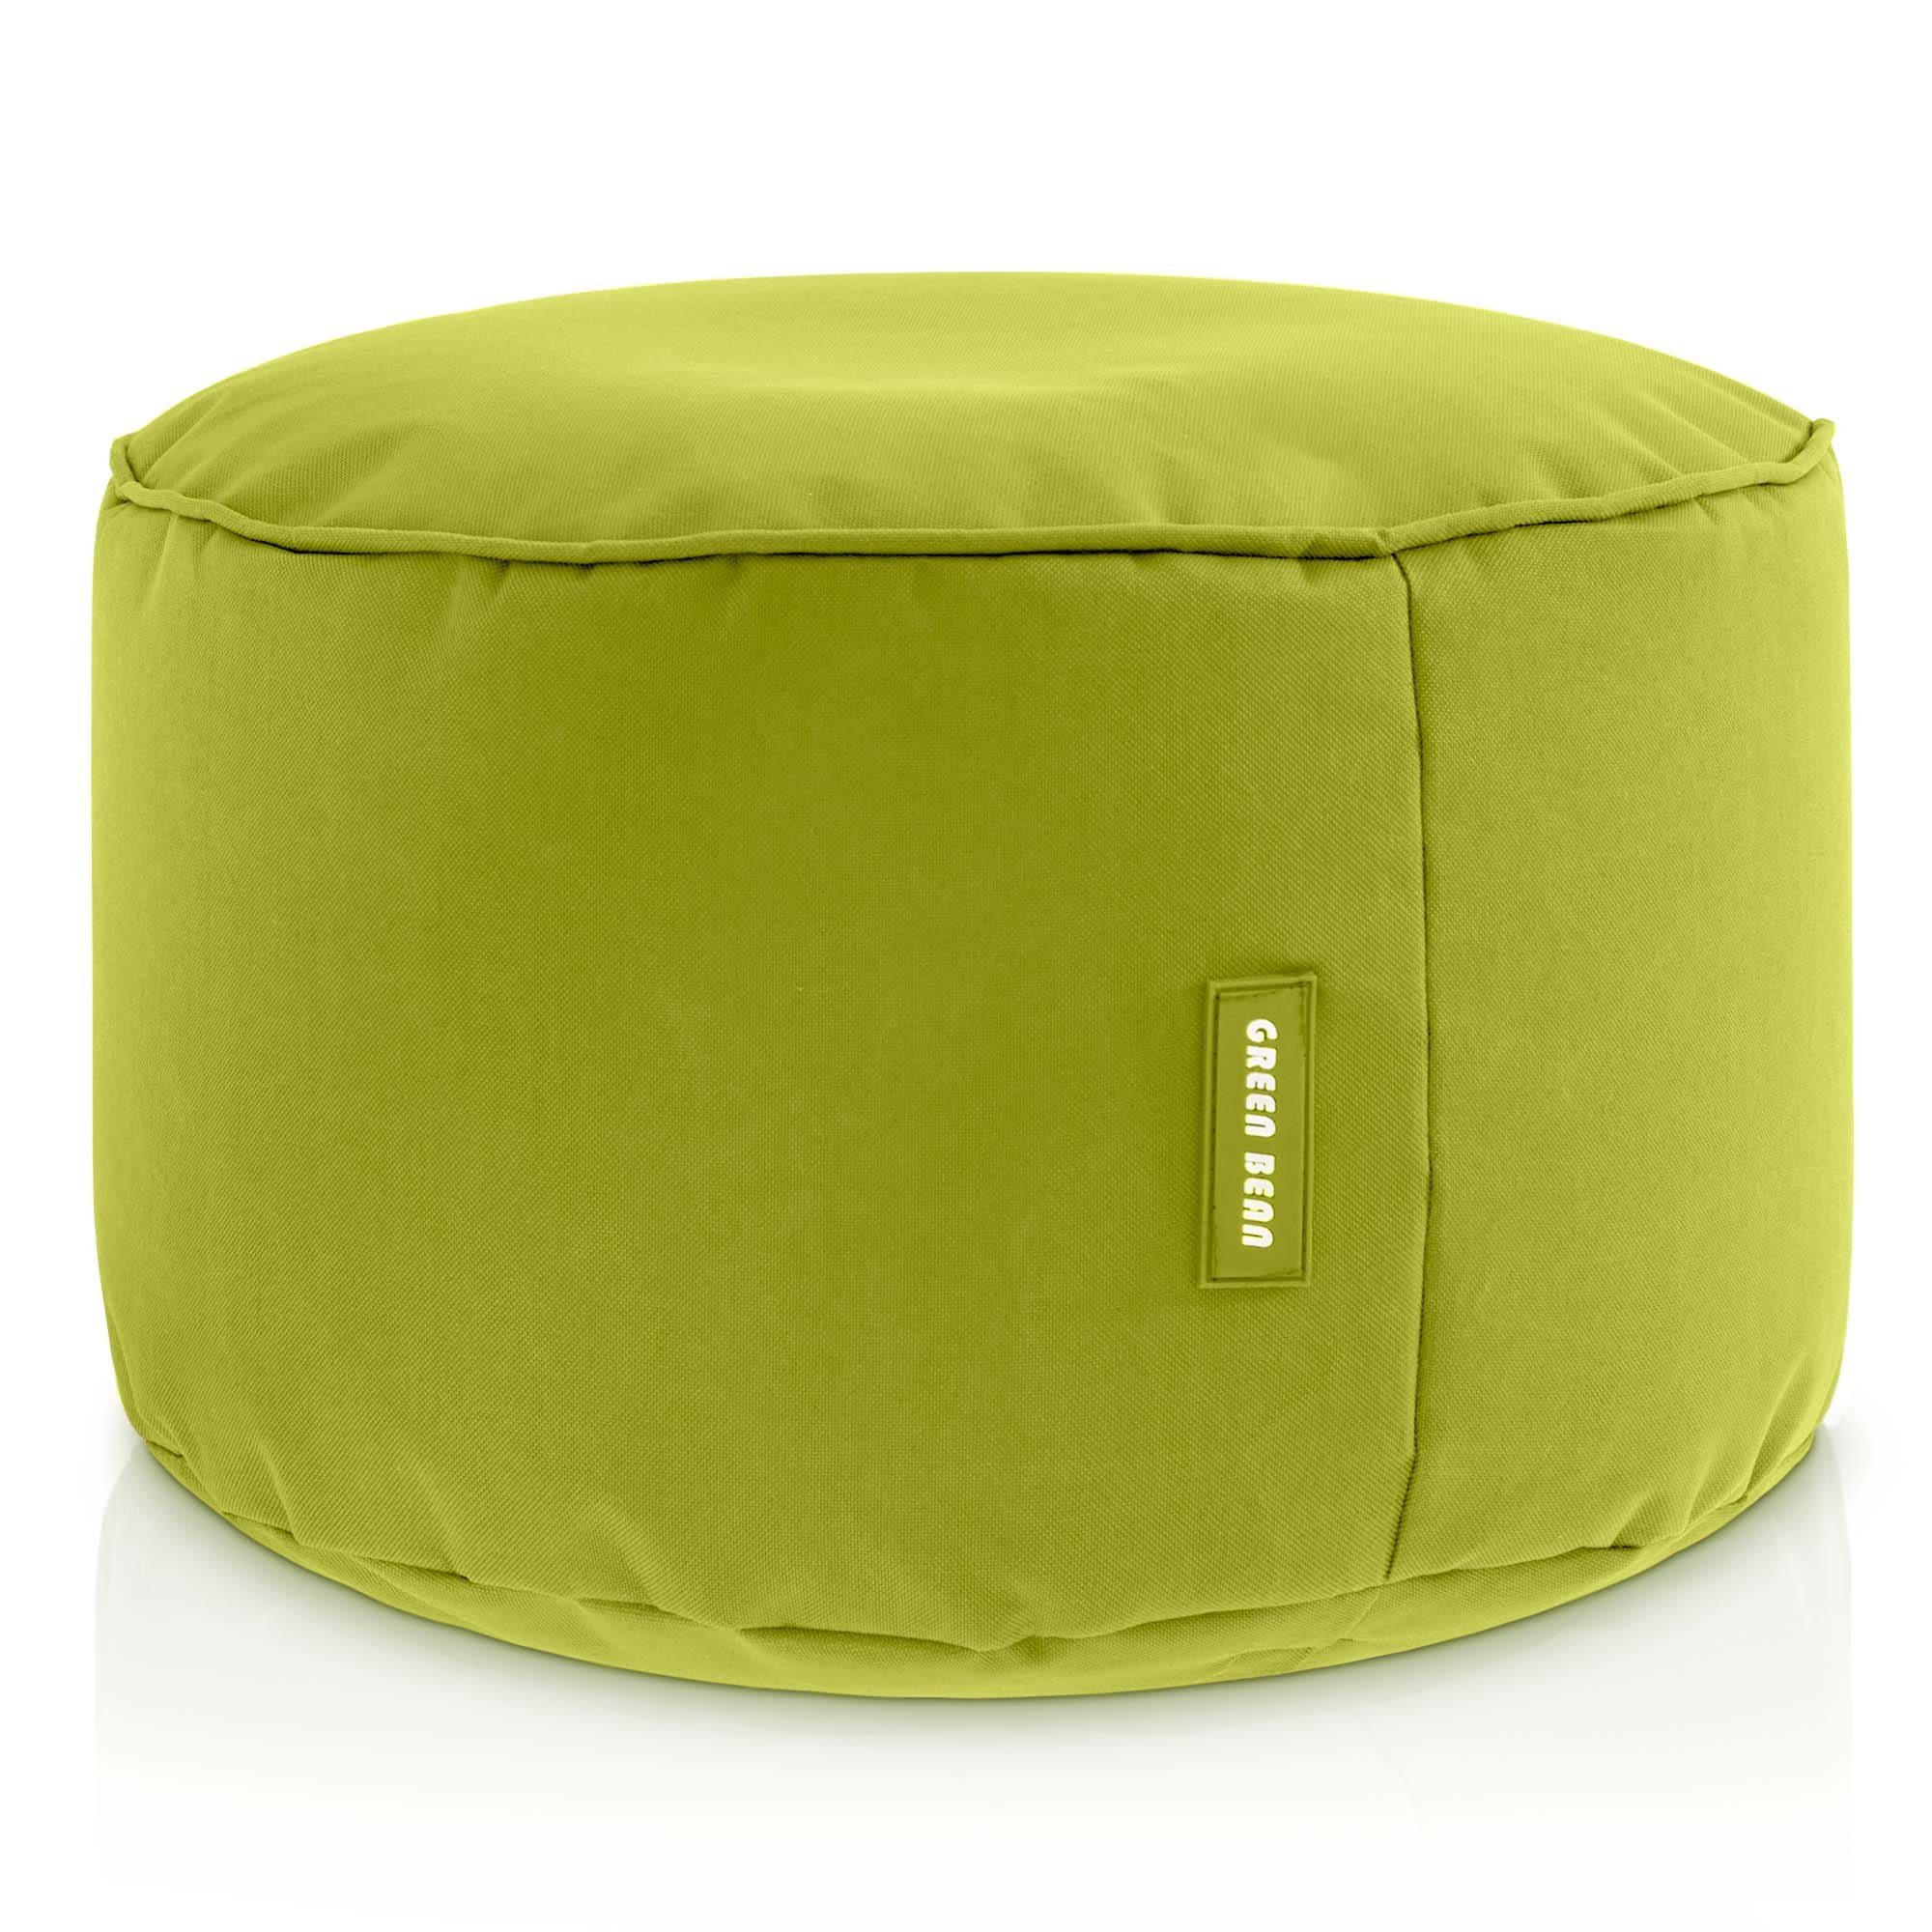 Green Bean Pouf Stay (Sitzsack-Hocker 25x45cm mit EPS-Perlen Füllung -, Fußhocker Fußkissen Sitz-Pouf für Sitzsäcke), Bodenkissen für Kinder und Erwachsene - Sitzkissen Sitzhocker Grün